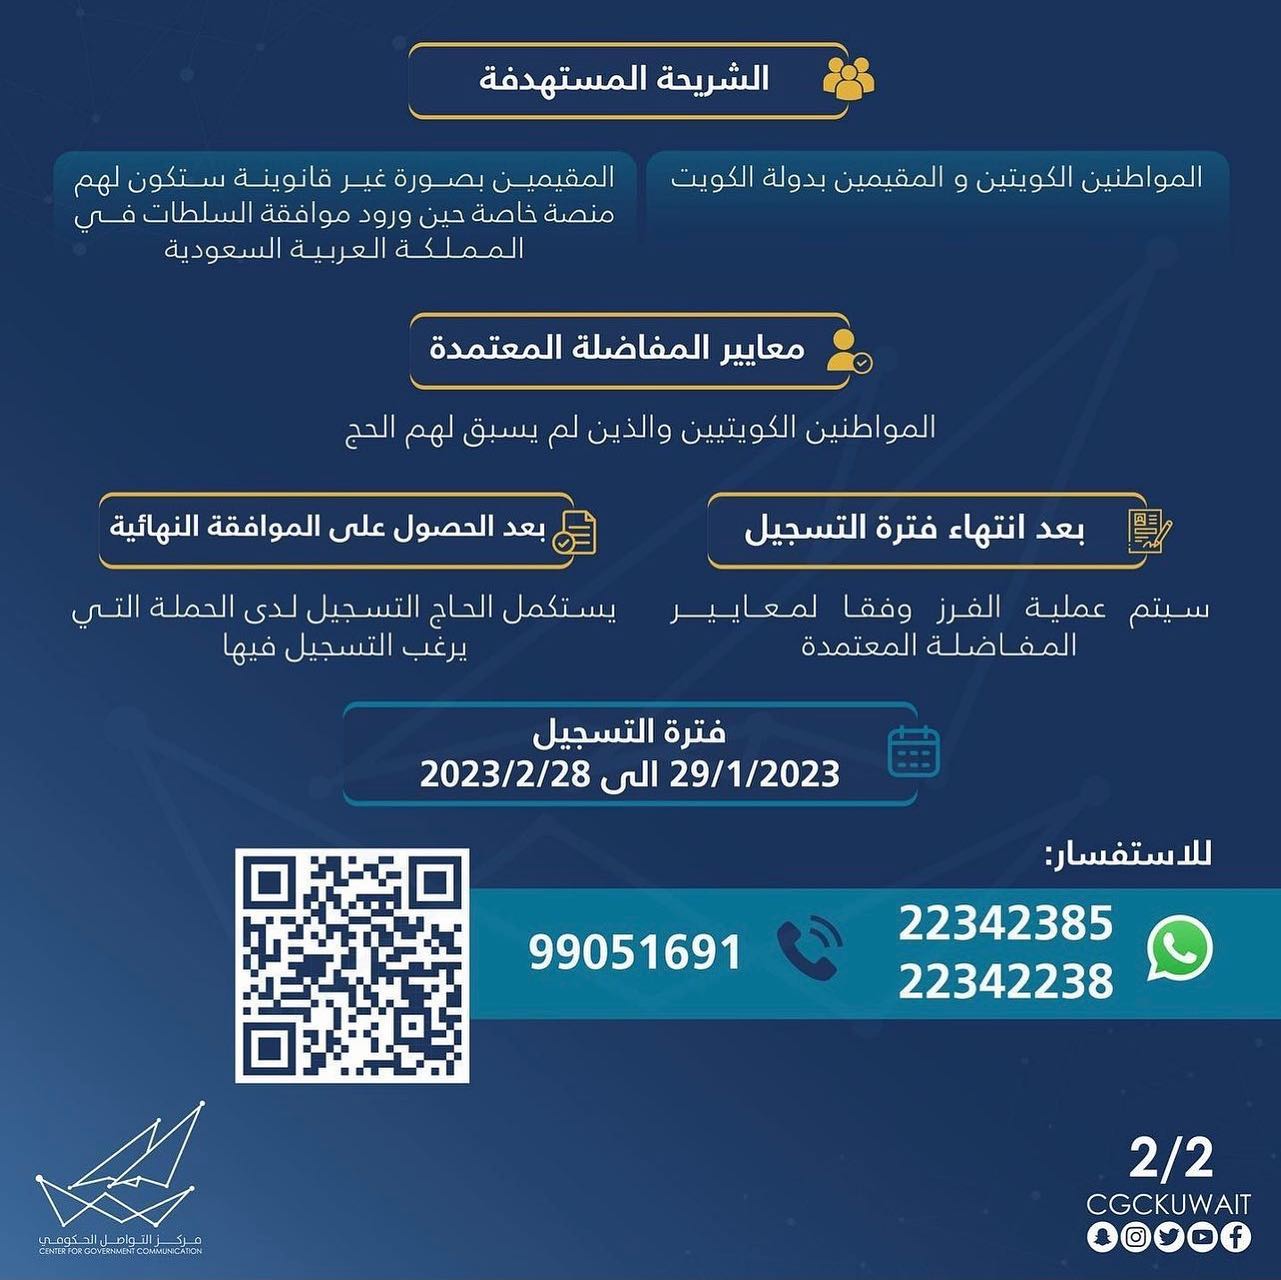 ما مواعيد تسجيل الحج 2023 الكويت؟